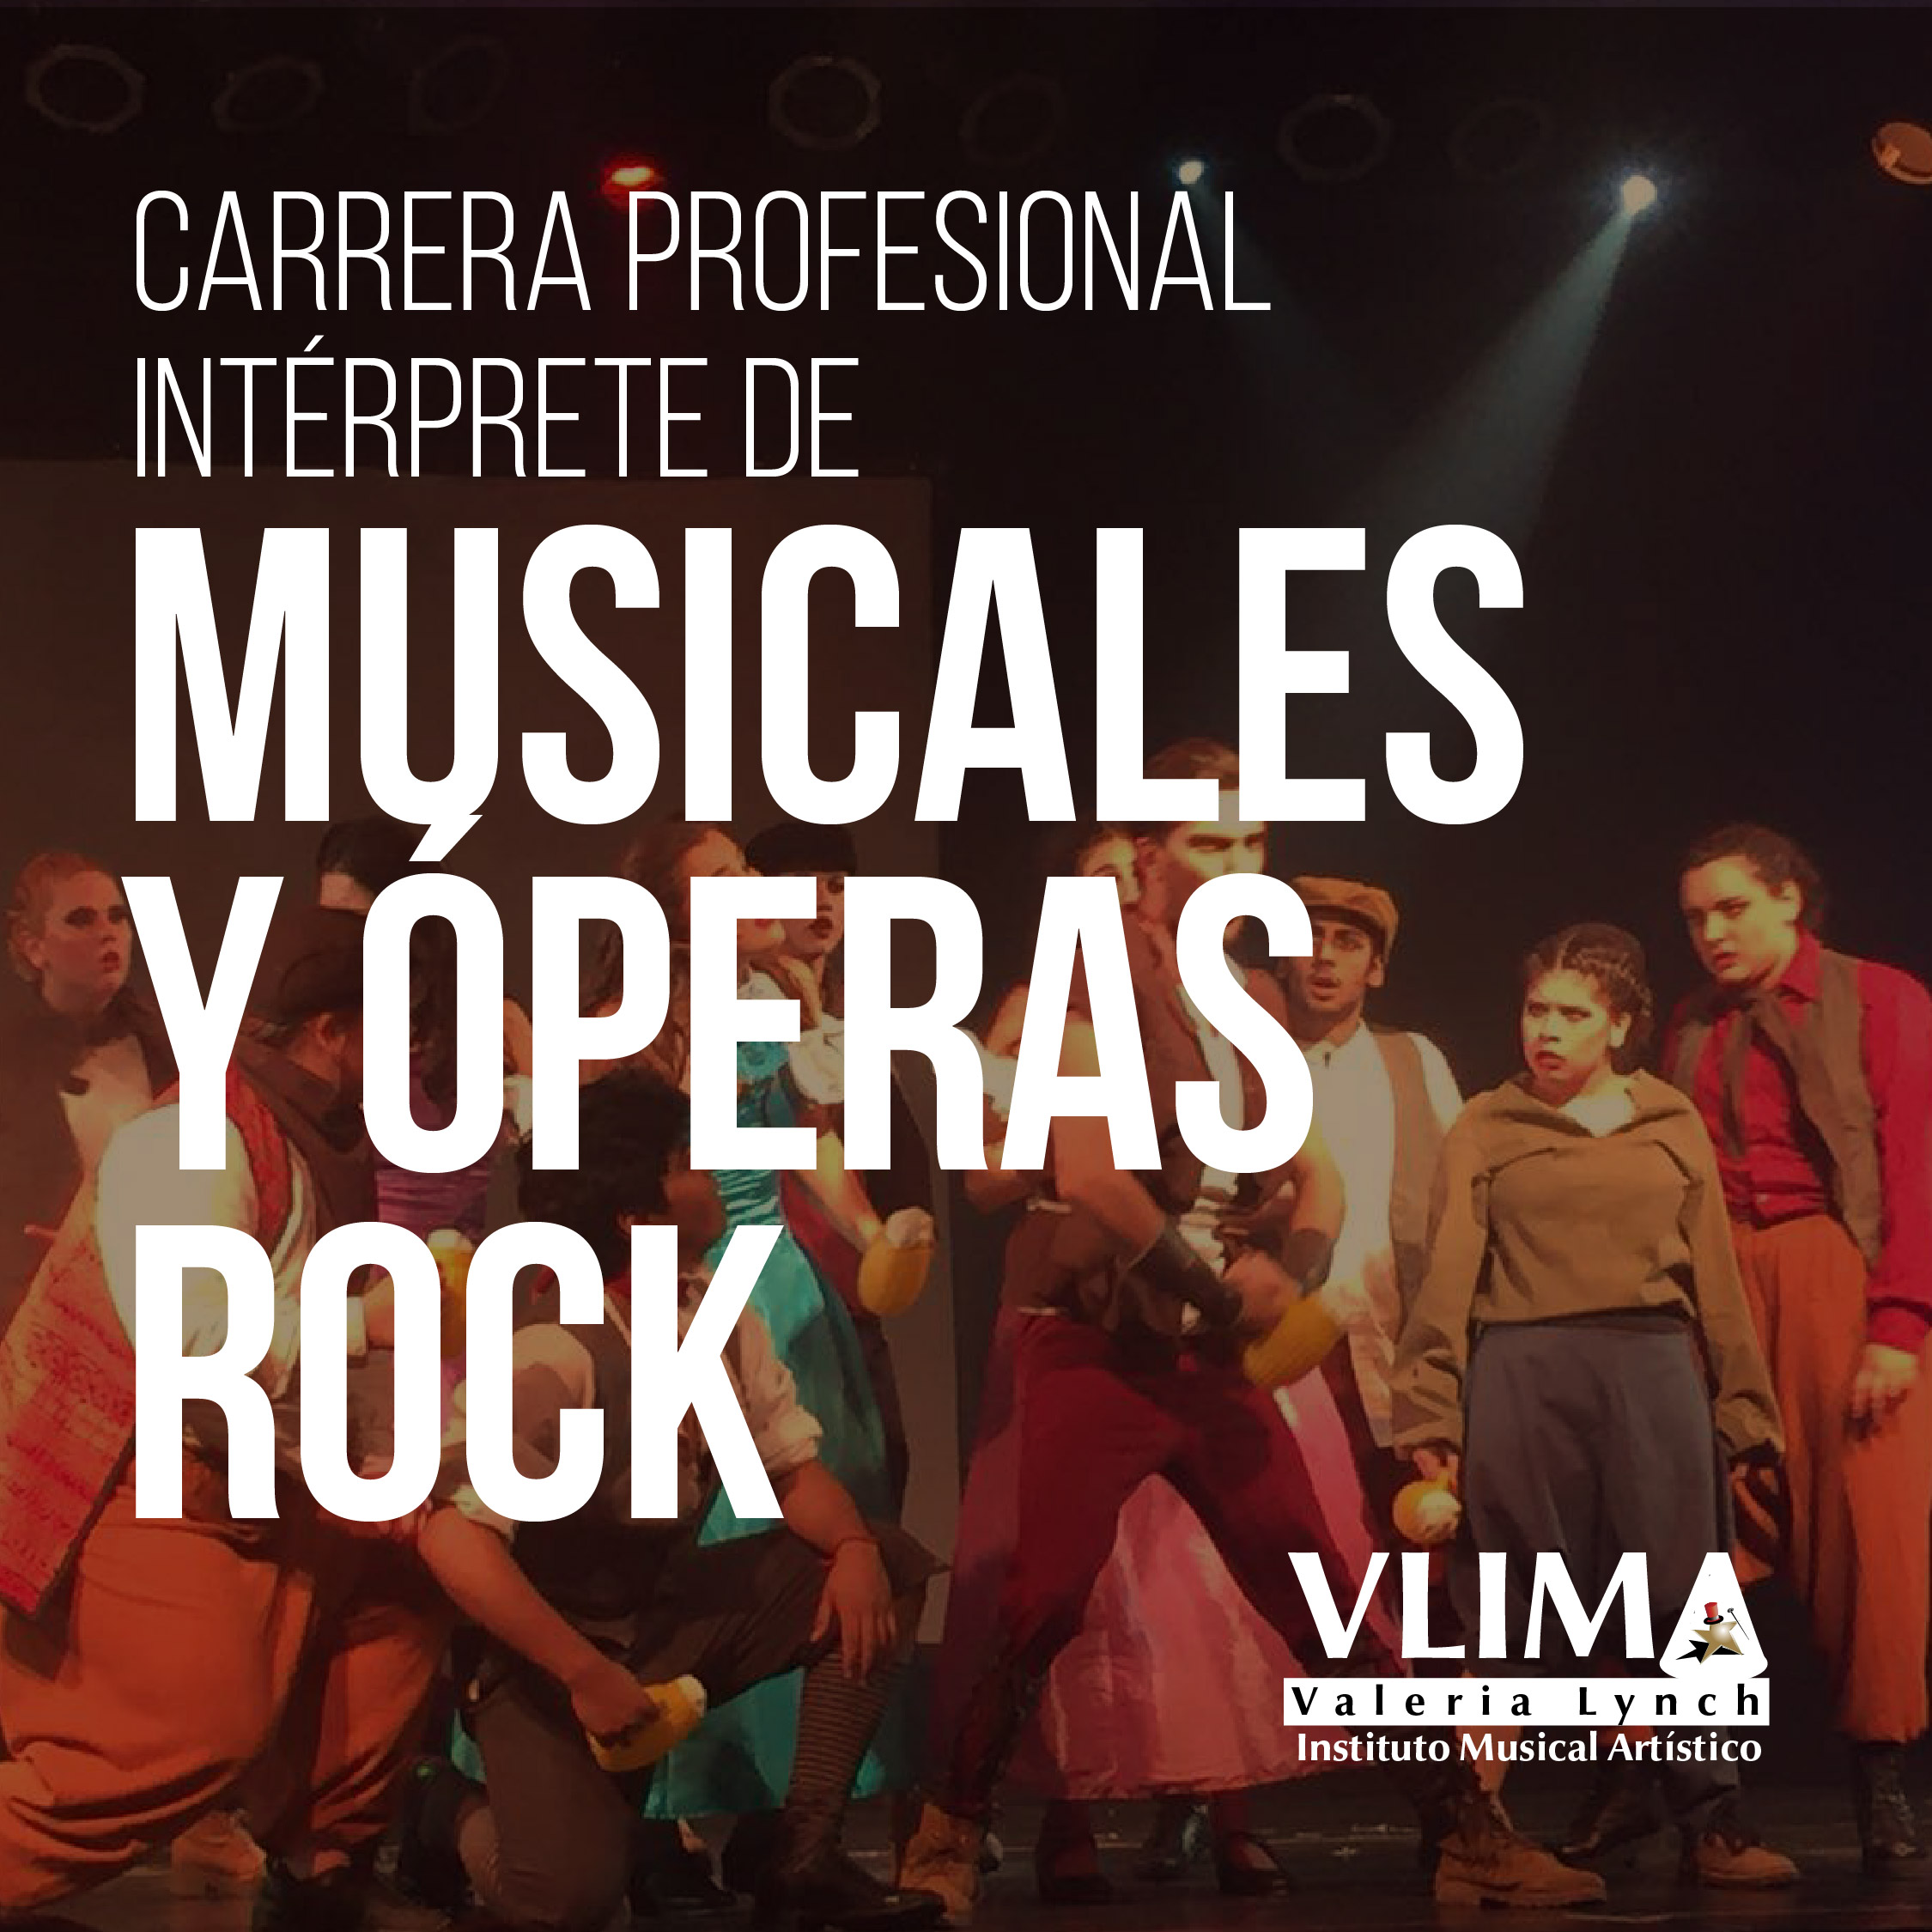 CARRERA PROFESIONAL DE INTÉRPRETE DE MUSICALES Y ÓPERAS ROCK